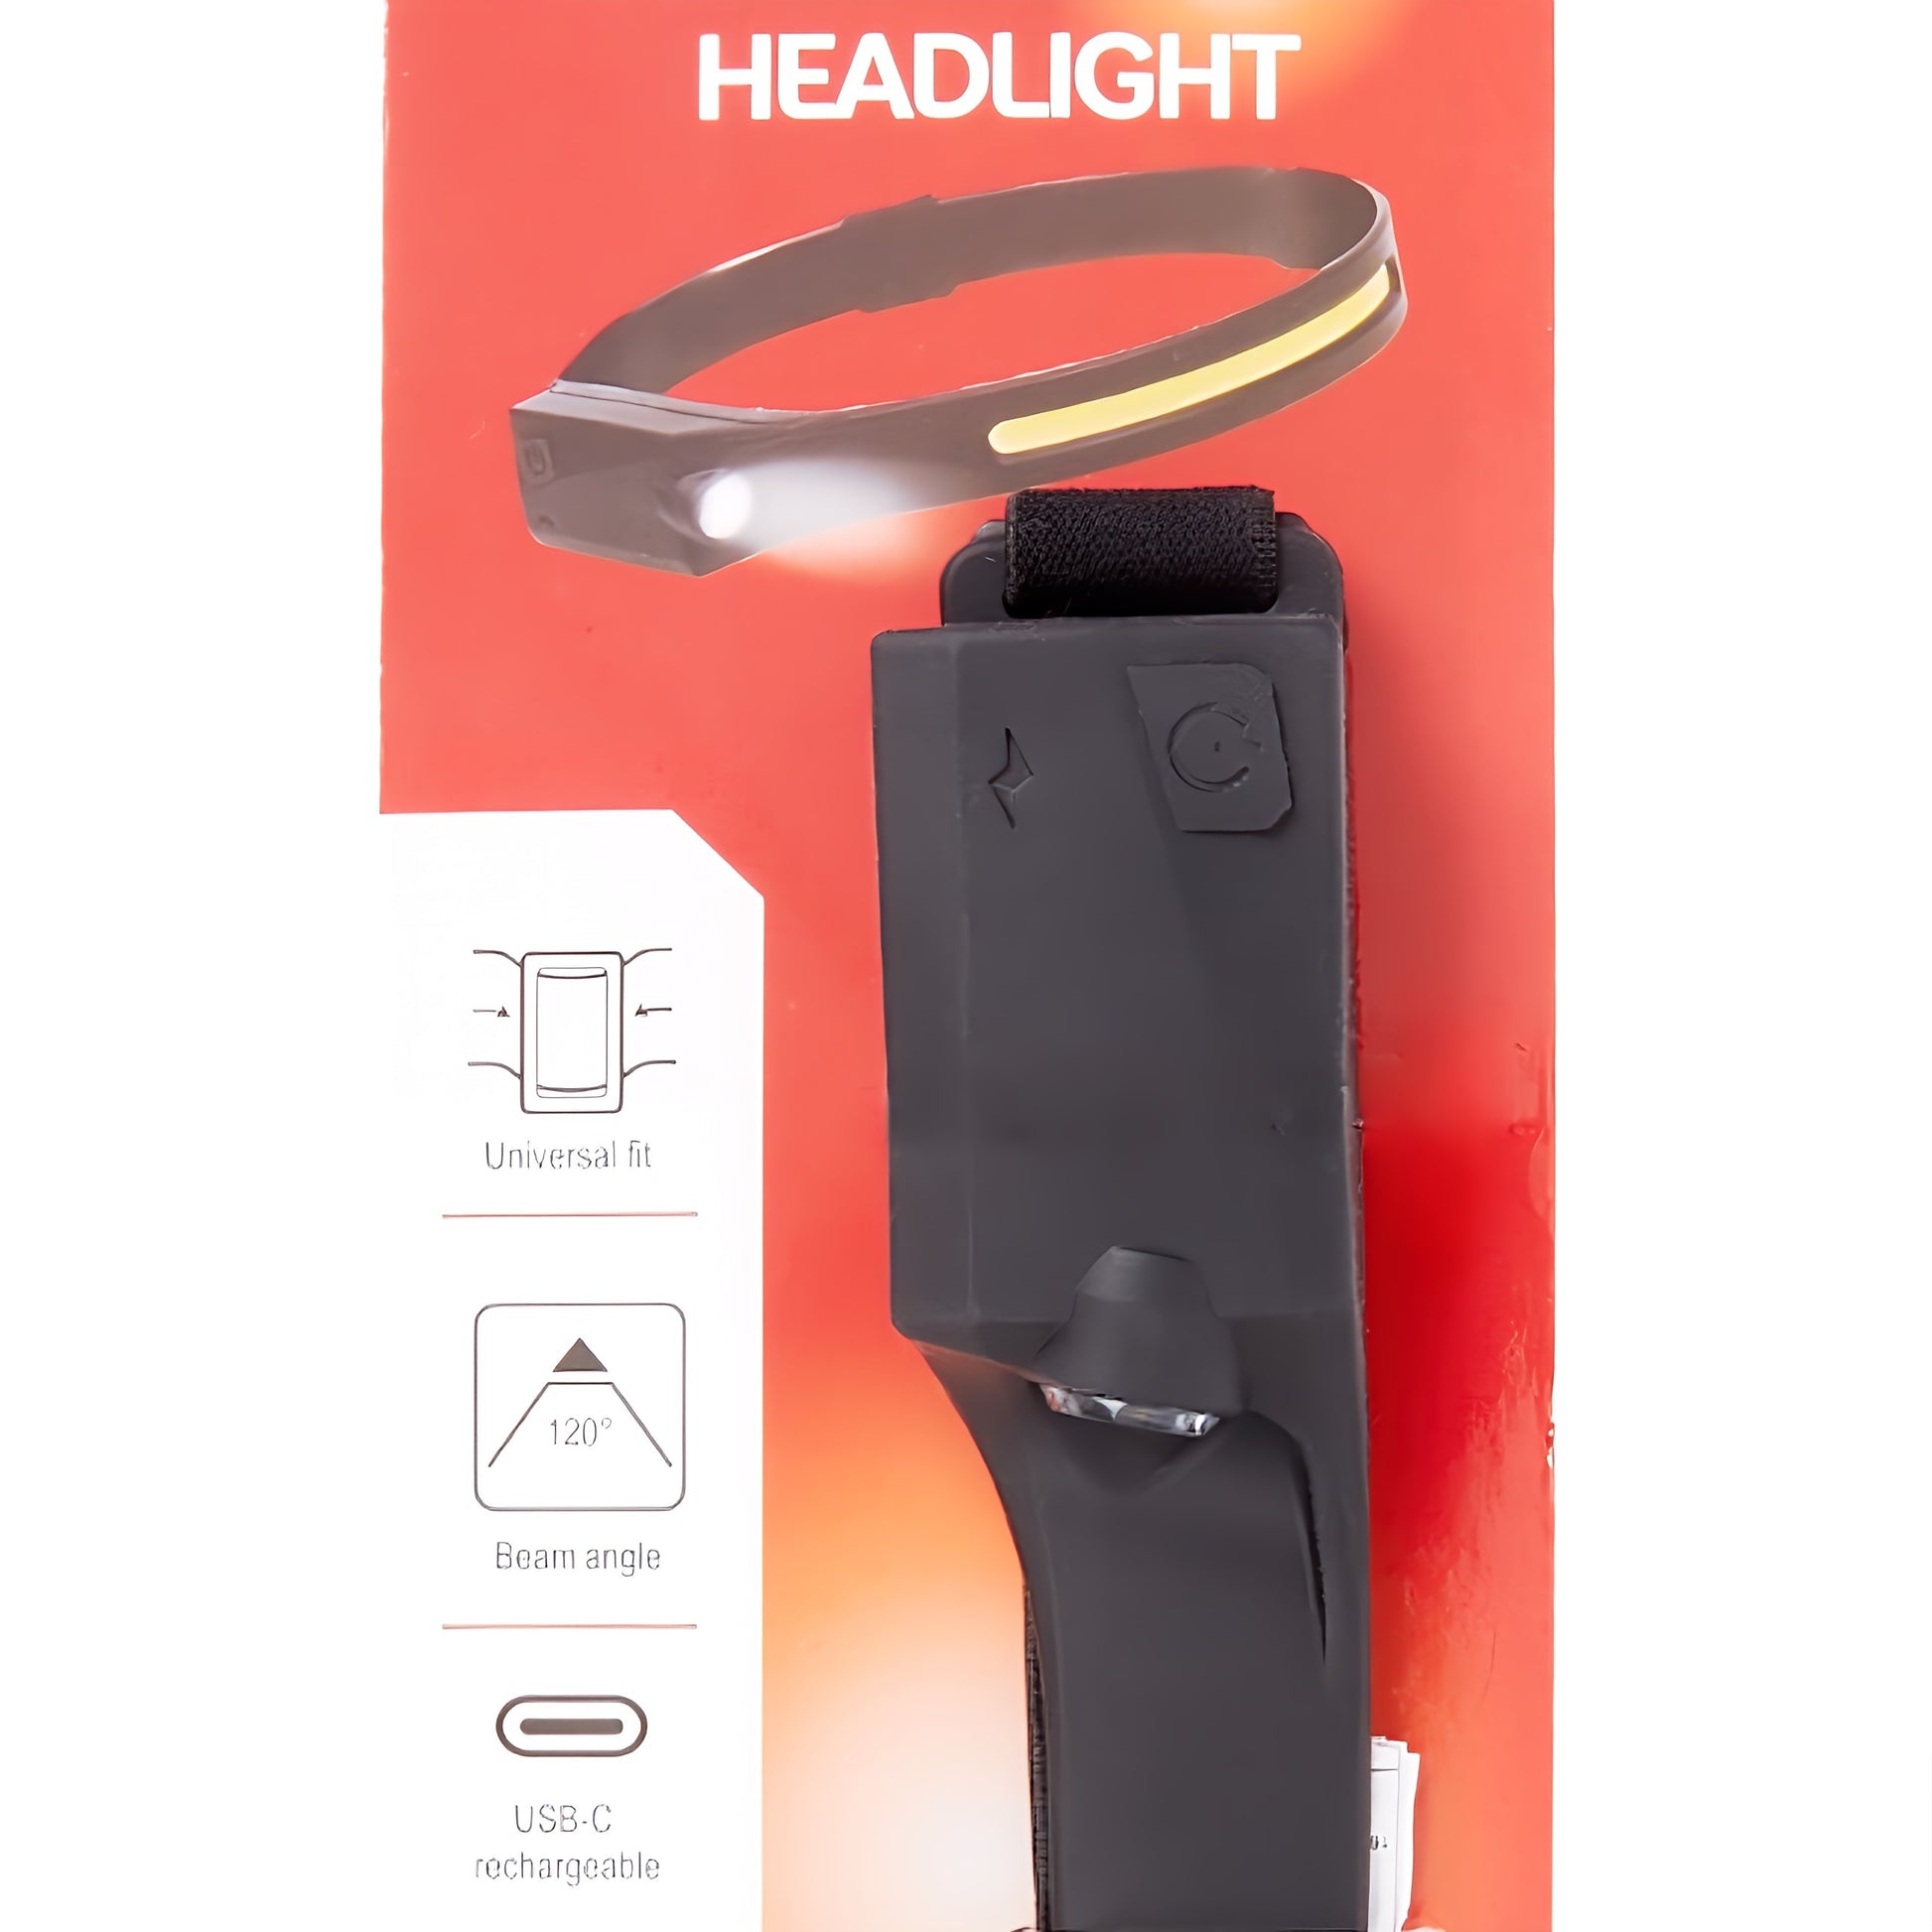 Stirnlampe Kopflampe mit 2 Lampen und Weitwinkel von 120°